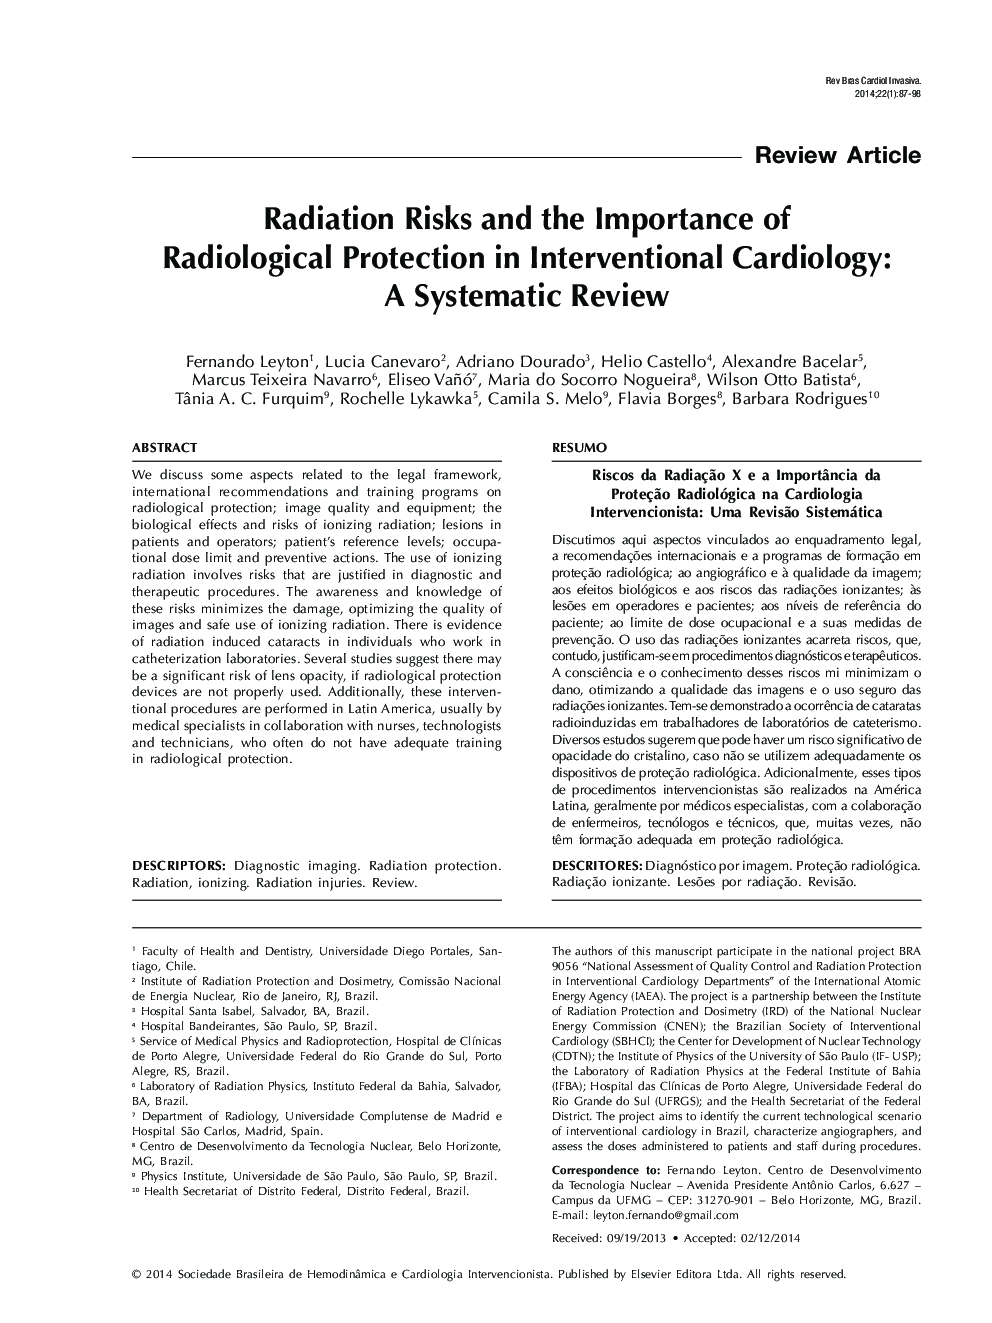 ریسک های رادیویی و اهمیت حفاظت رادیولوژیک در قلب بیماری مداخلات: یک بررسی سیستماتیک 